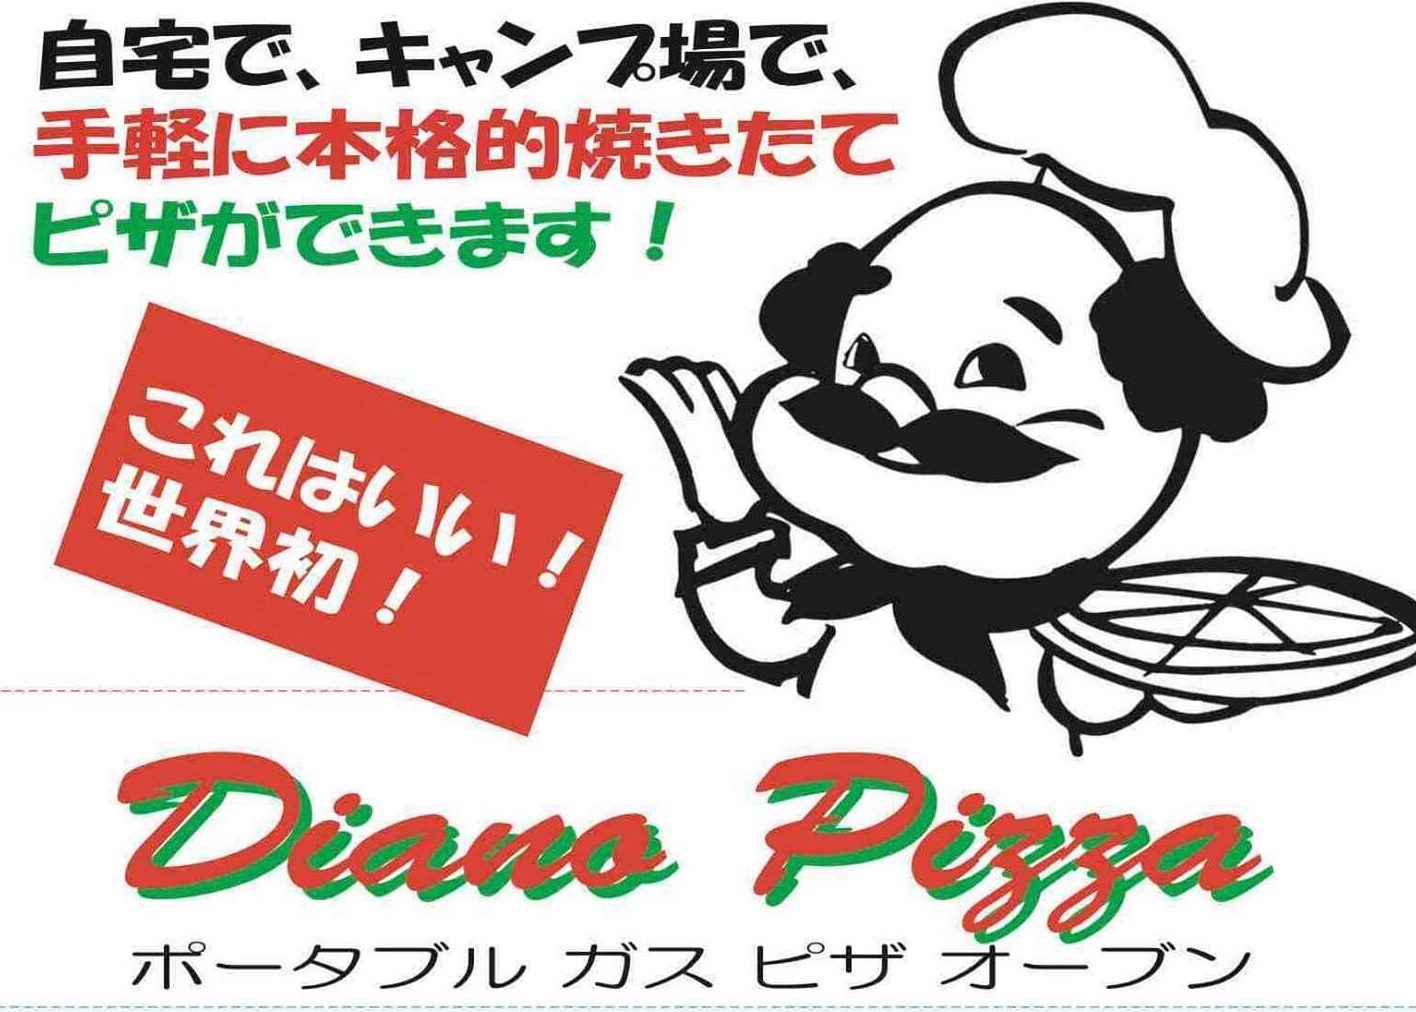 LPGガス仕様コンパクトポータブルオーブン『Diano Pizza』いよいよ4月 